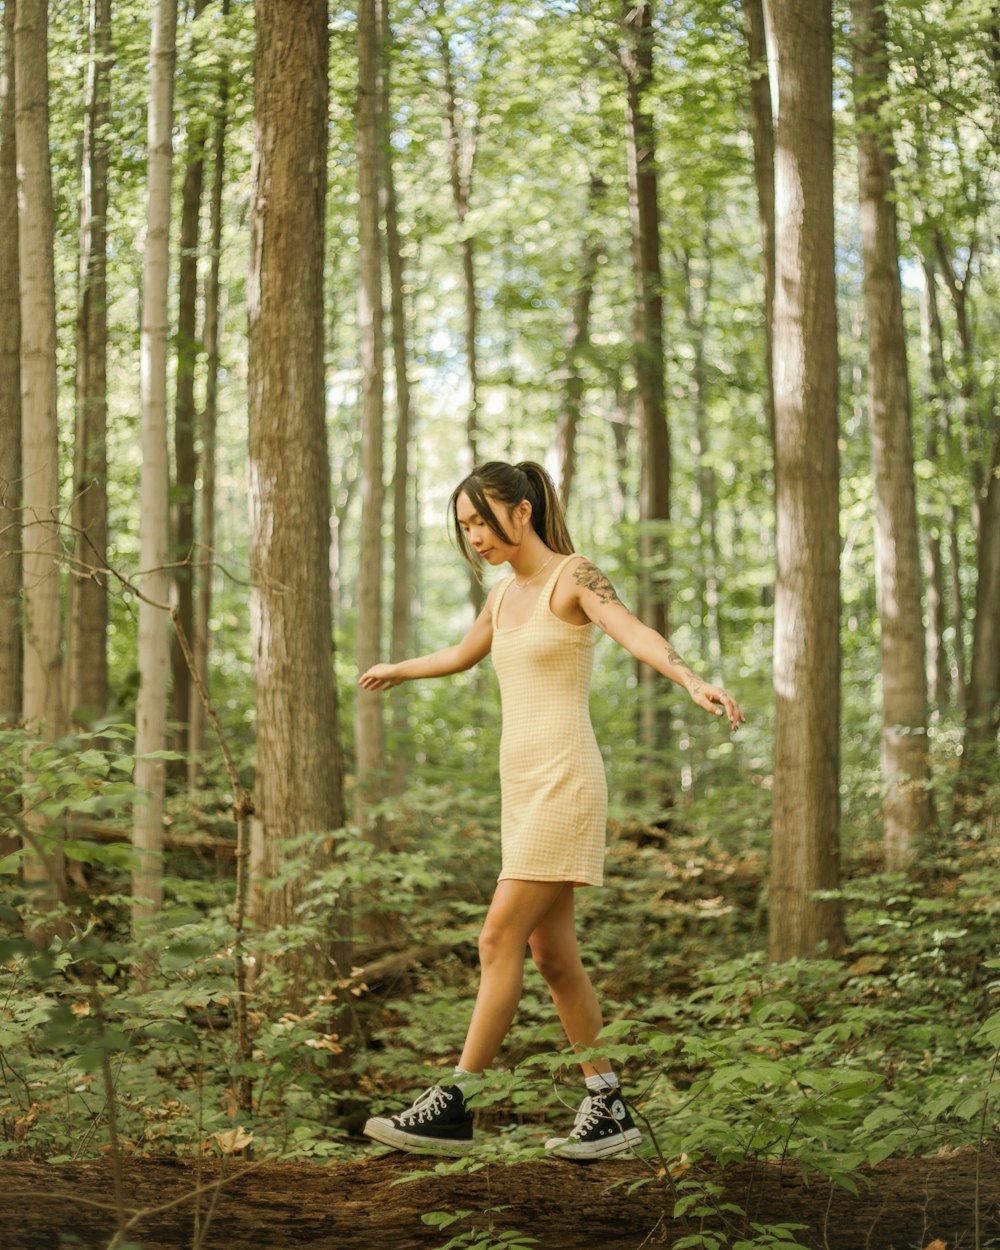 Une femme en robe jaune marchant dans une forêt